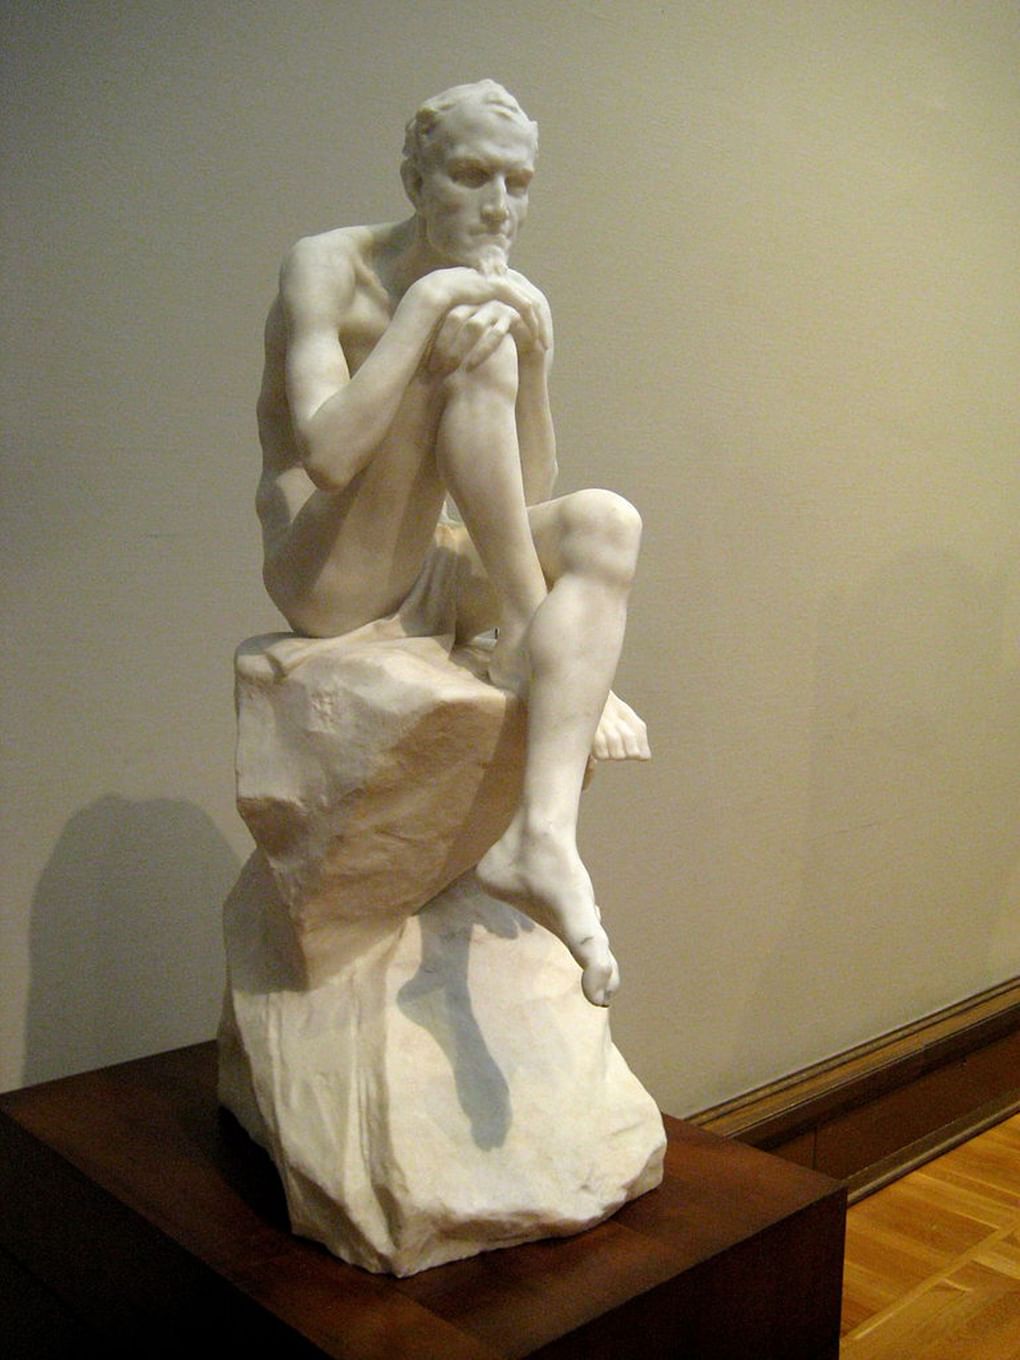 Марк Антокольский. Статуя Мефистофеля. 1883. Фотография: shakko / Wikimedia.org